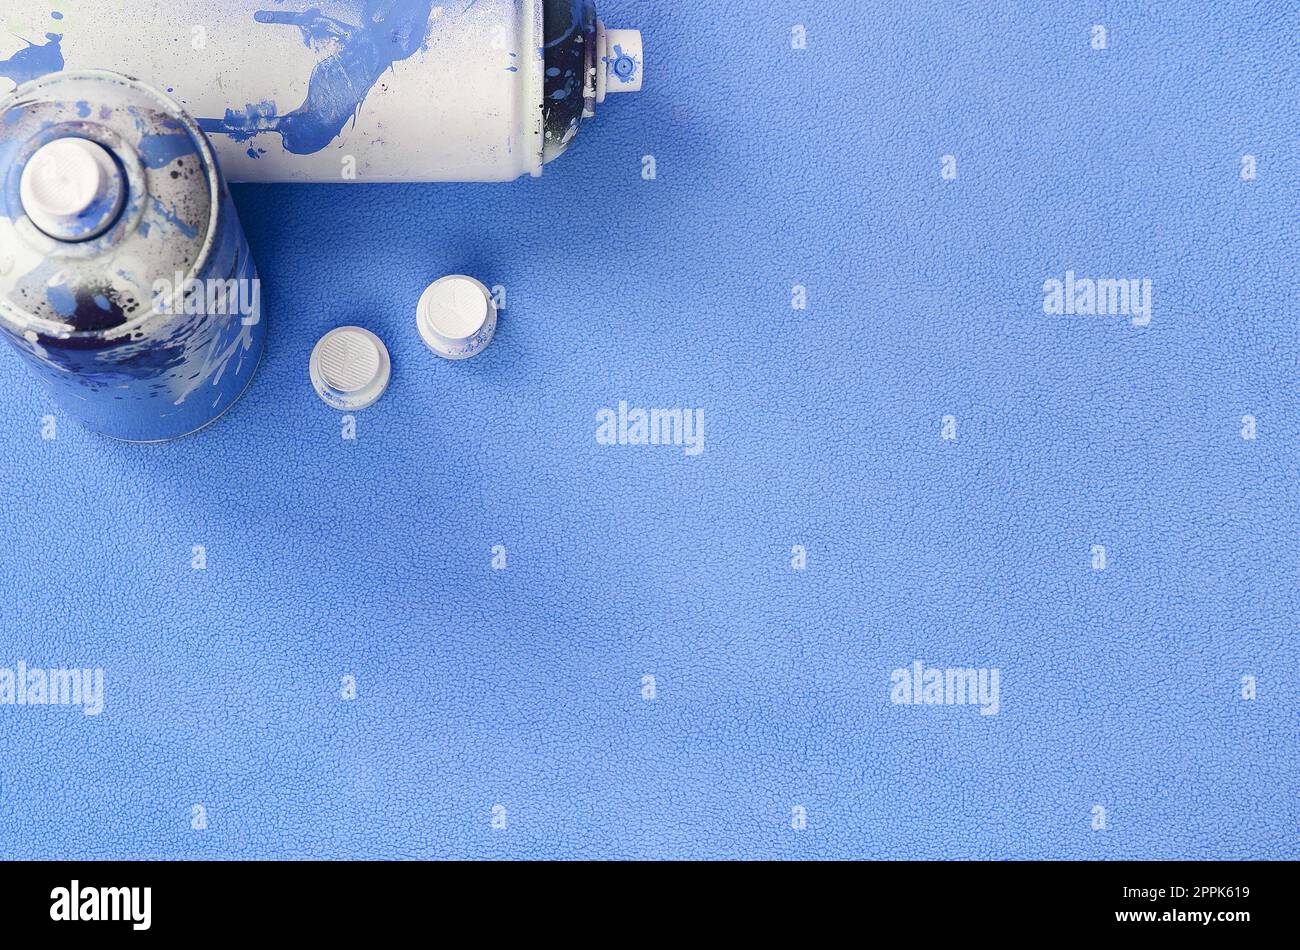 Einige gebrauchte blaue Spraydosen und Düsen mit Lacktropfen liegen auf einer Decke aus weichem, hellblauem Fleece. Klassische Damenfarbe. Graffiti-Hooliganismus-Konzept Stockfoto